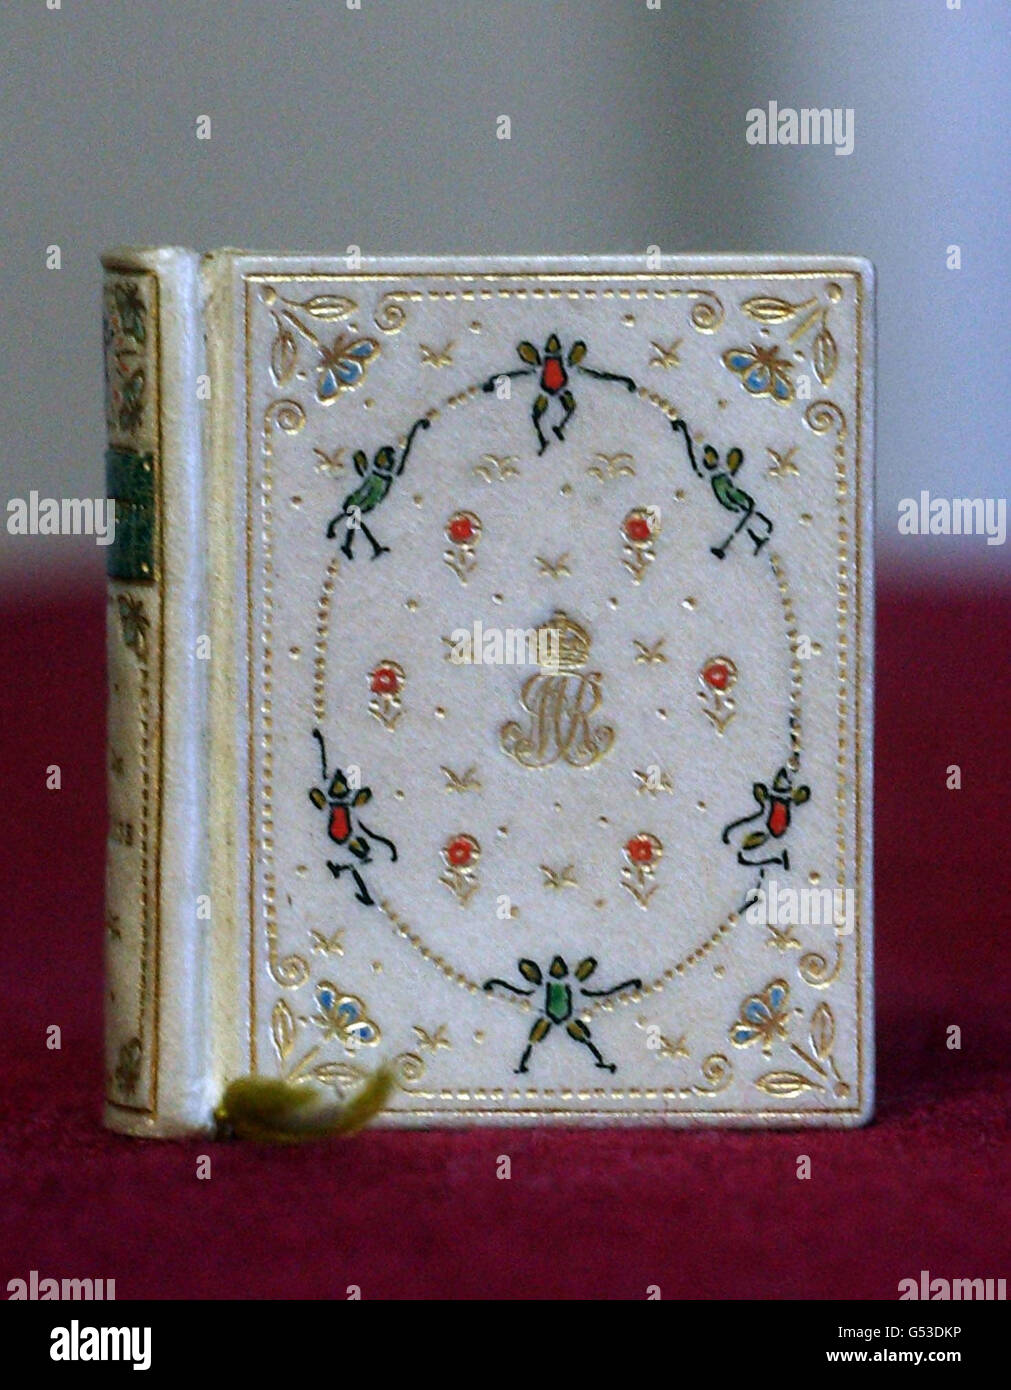 Un libro en miniatura hecho especialmente para la Casa de Muñecas de la Reina María en el Castillo de Windsor, que mide 4cm por 3,5cm y contiene una historia de hadas que ha sido reproducida por primera vez. Foto de stock